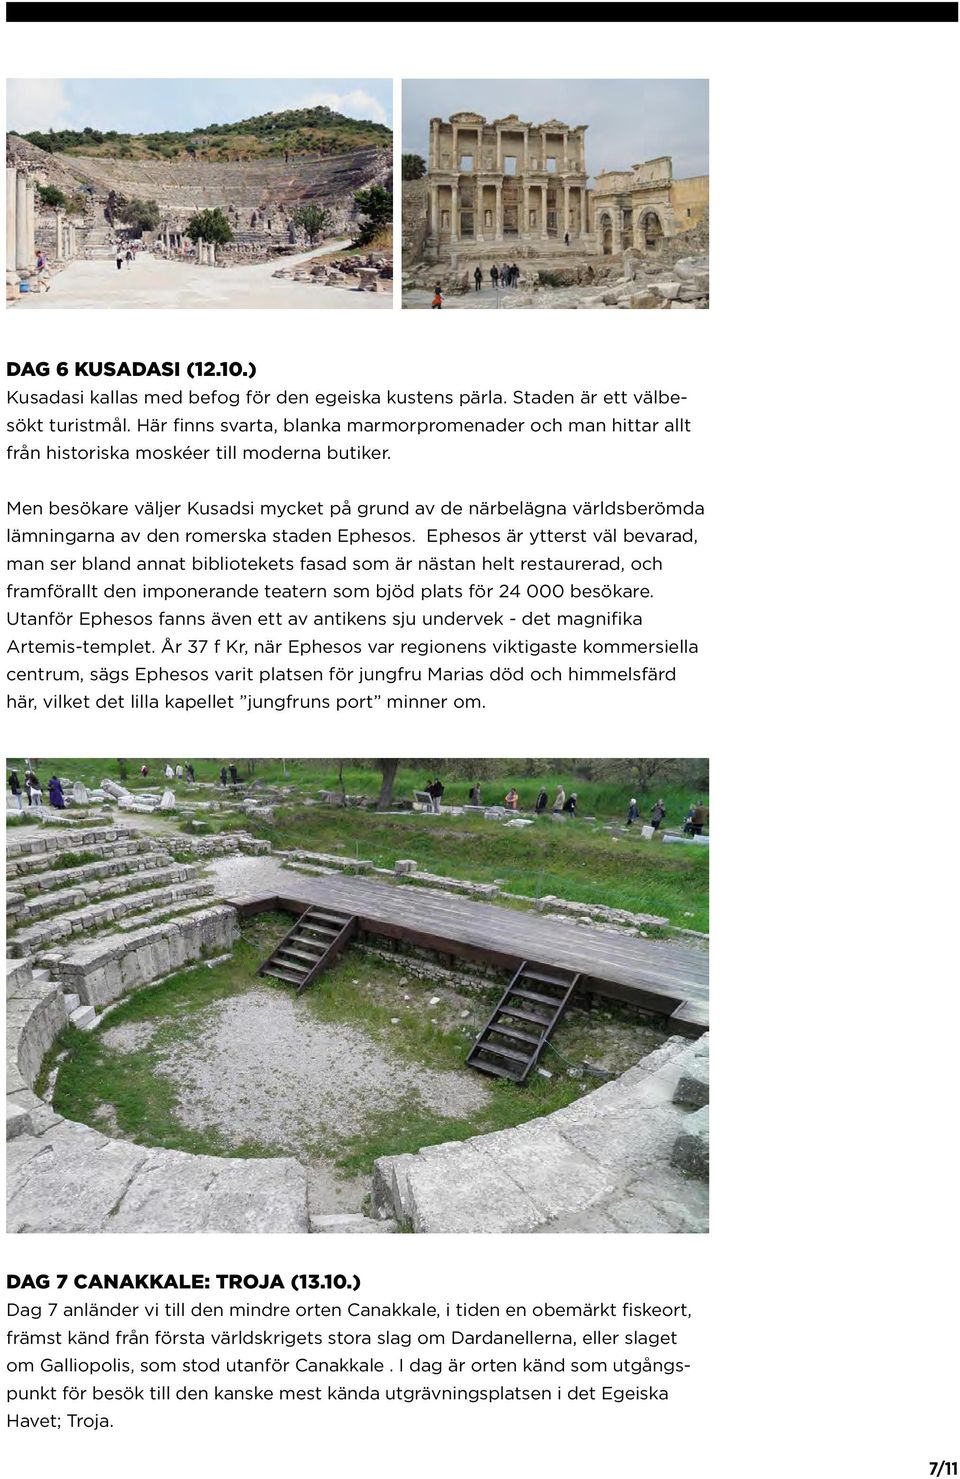 Men besökare väljer Kusadsi mycket på grund av de närbelägna världsberömda lämningarna av den romerska staden Ephesos.